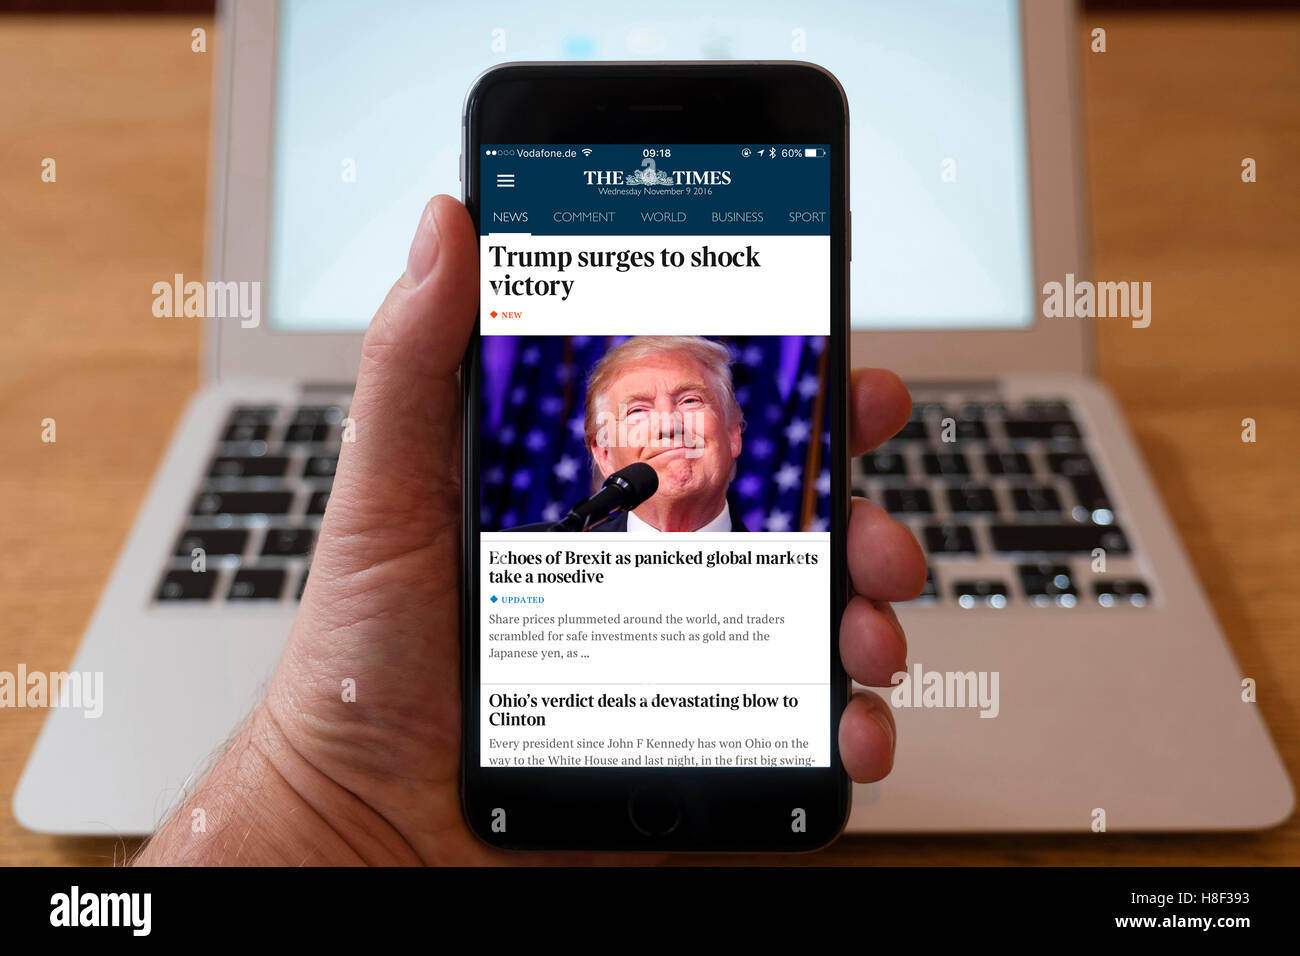 Détail de l'iPhone téléphone mobile intelligent en ligne montrant des journaux page titre de The Times après l'atout de Donald's victo Banque D'Images